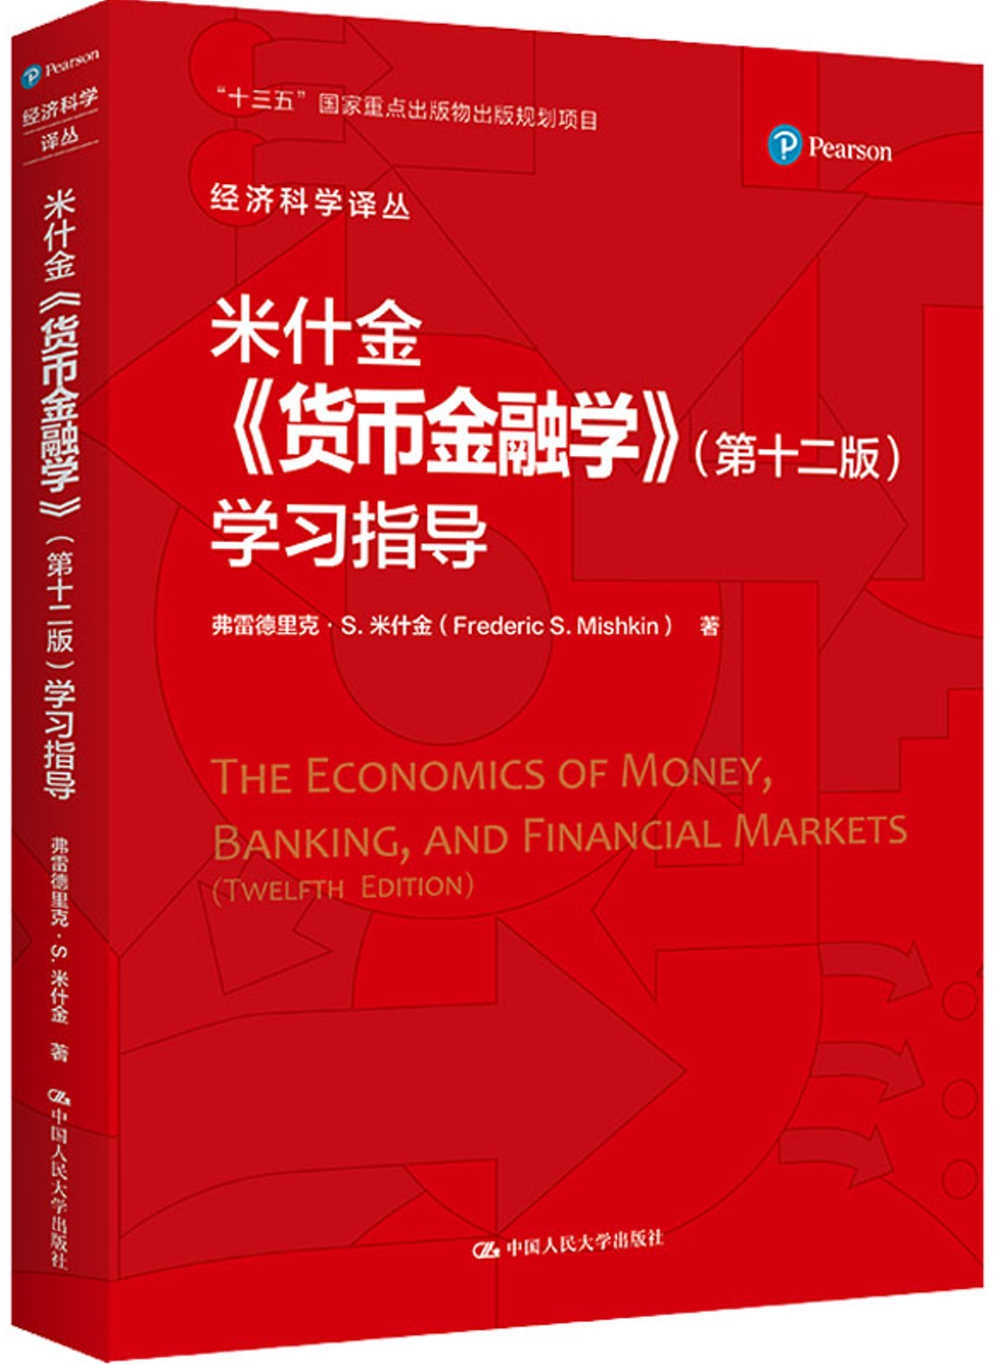 米什金《貨幣金融學》(第十二版)學習指導